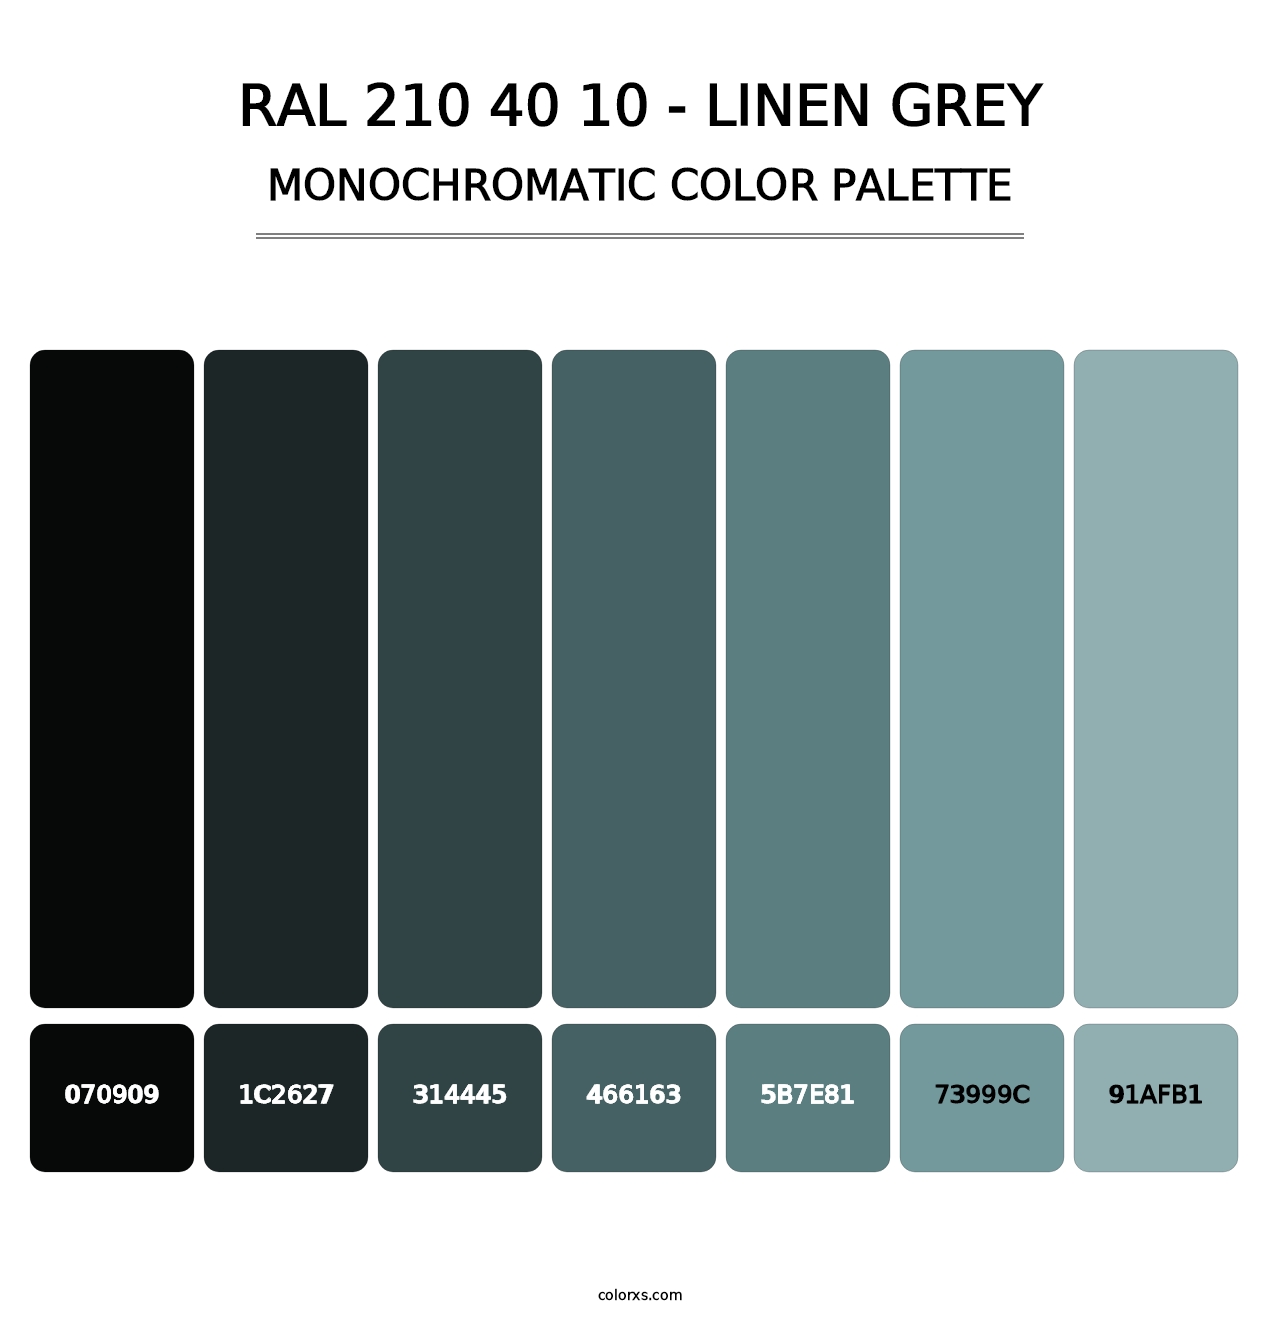 RAL 210 40 10 - Linen Grey - Monochromatic Color Palette